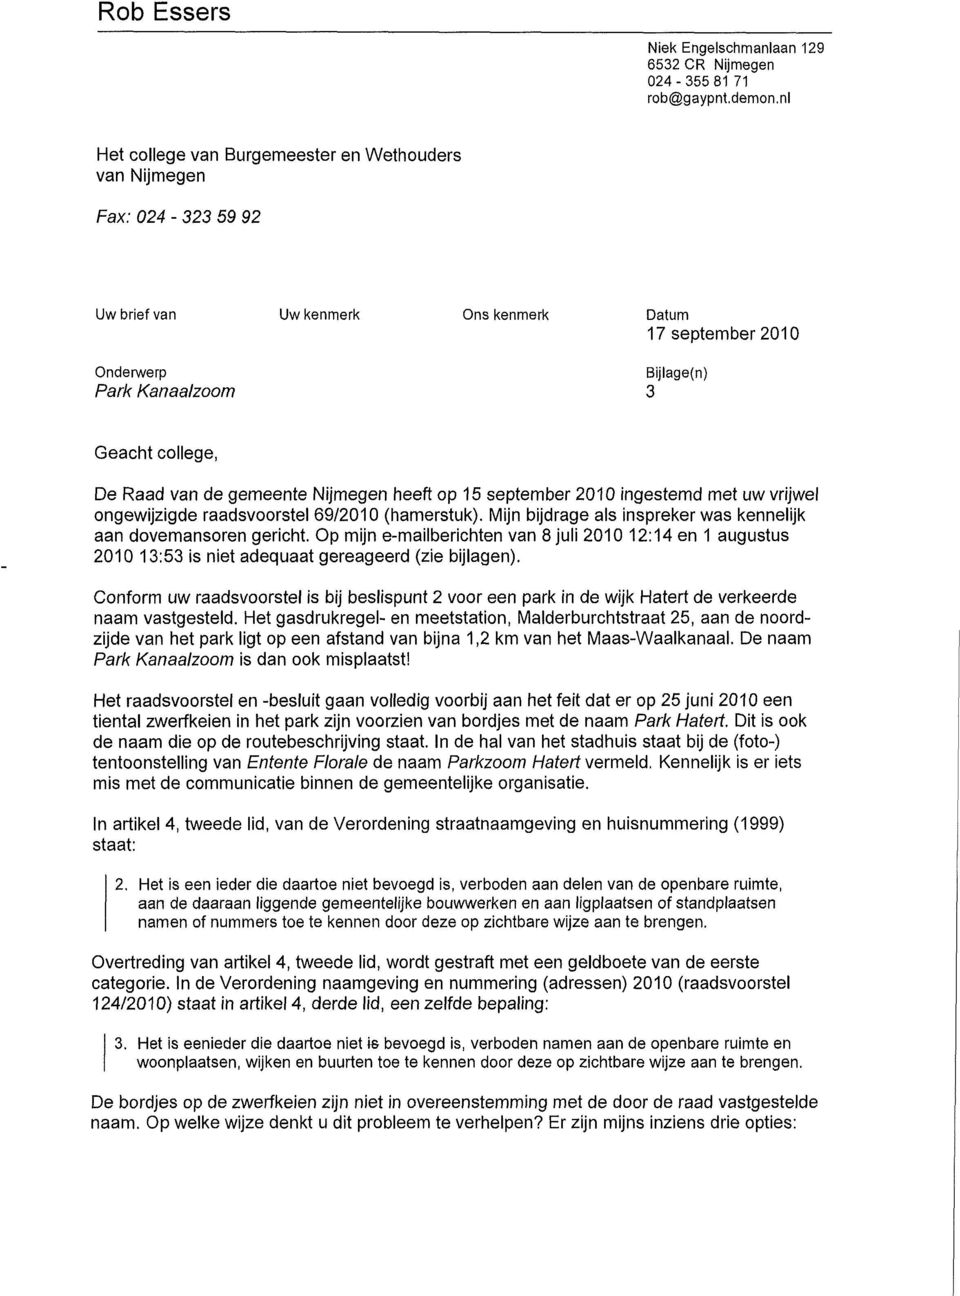 Raad van de gemeente Nijmegen heeft op 15 September 2010 ingestemd met uw vrijwel ongewijzigde raadsvoorstel 69/2010 (hamerstuk). Mijn bijdrage als inspreker was kennelijk aan dovemansoren gericht.